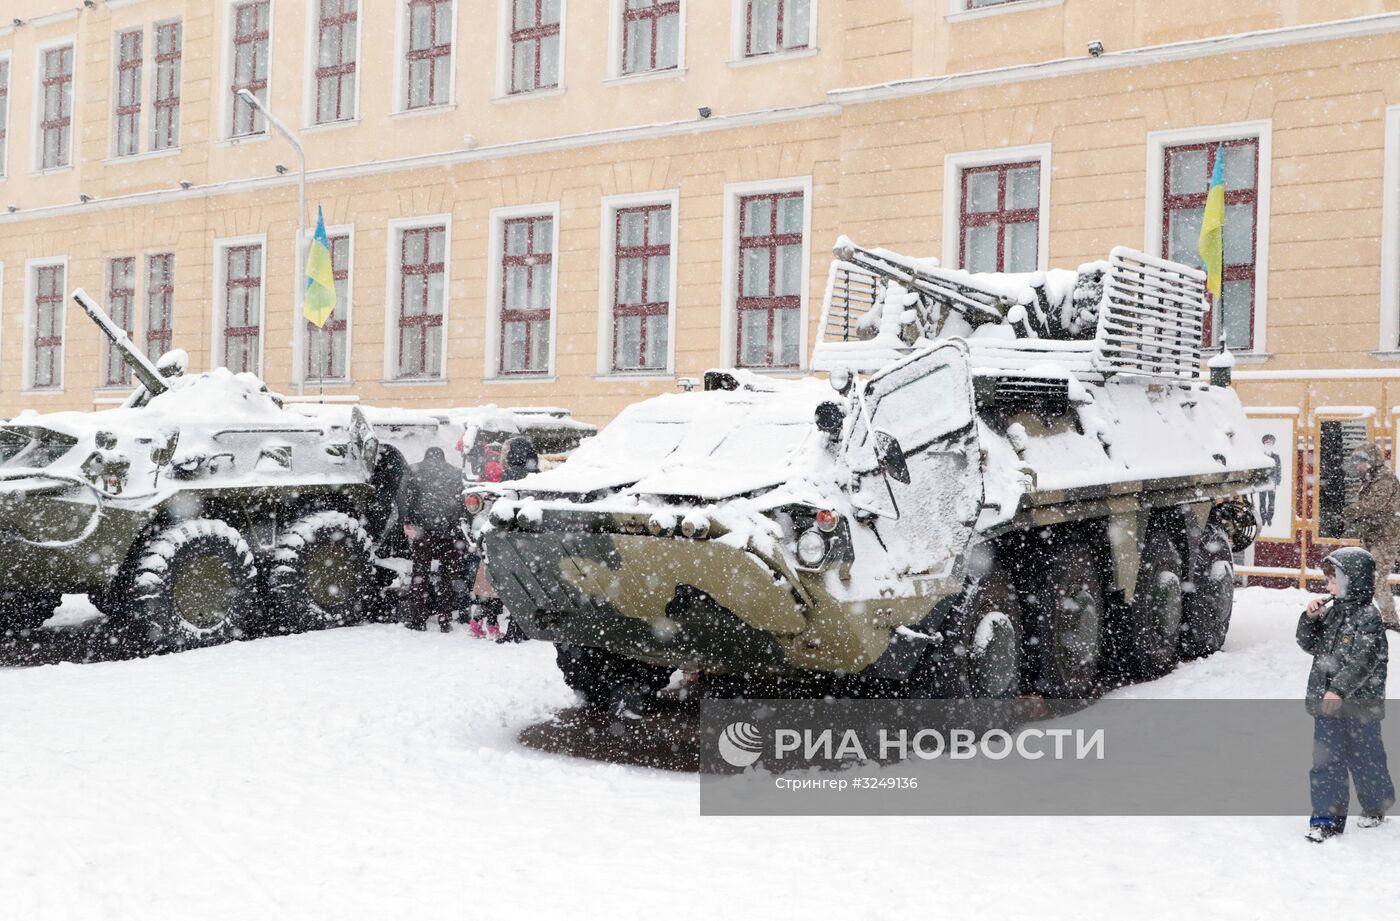 Выставка военной техники ВС Украины